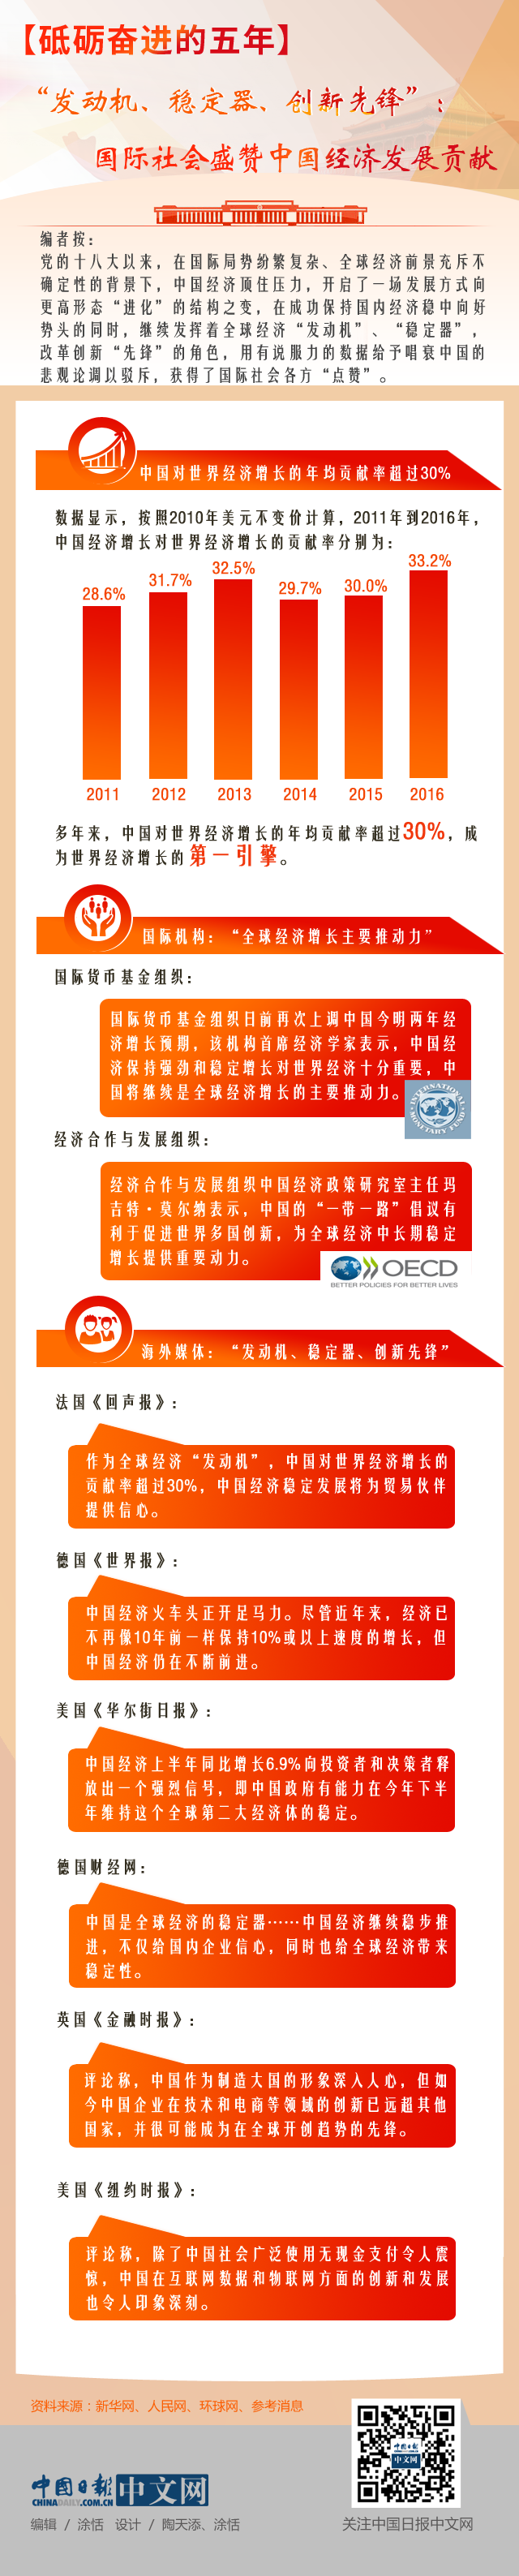 【砥砺奋进的五年】“发动机、稳定器、创新先锋”：国际社会盛赞中国经济发展贡献